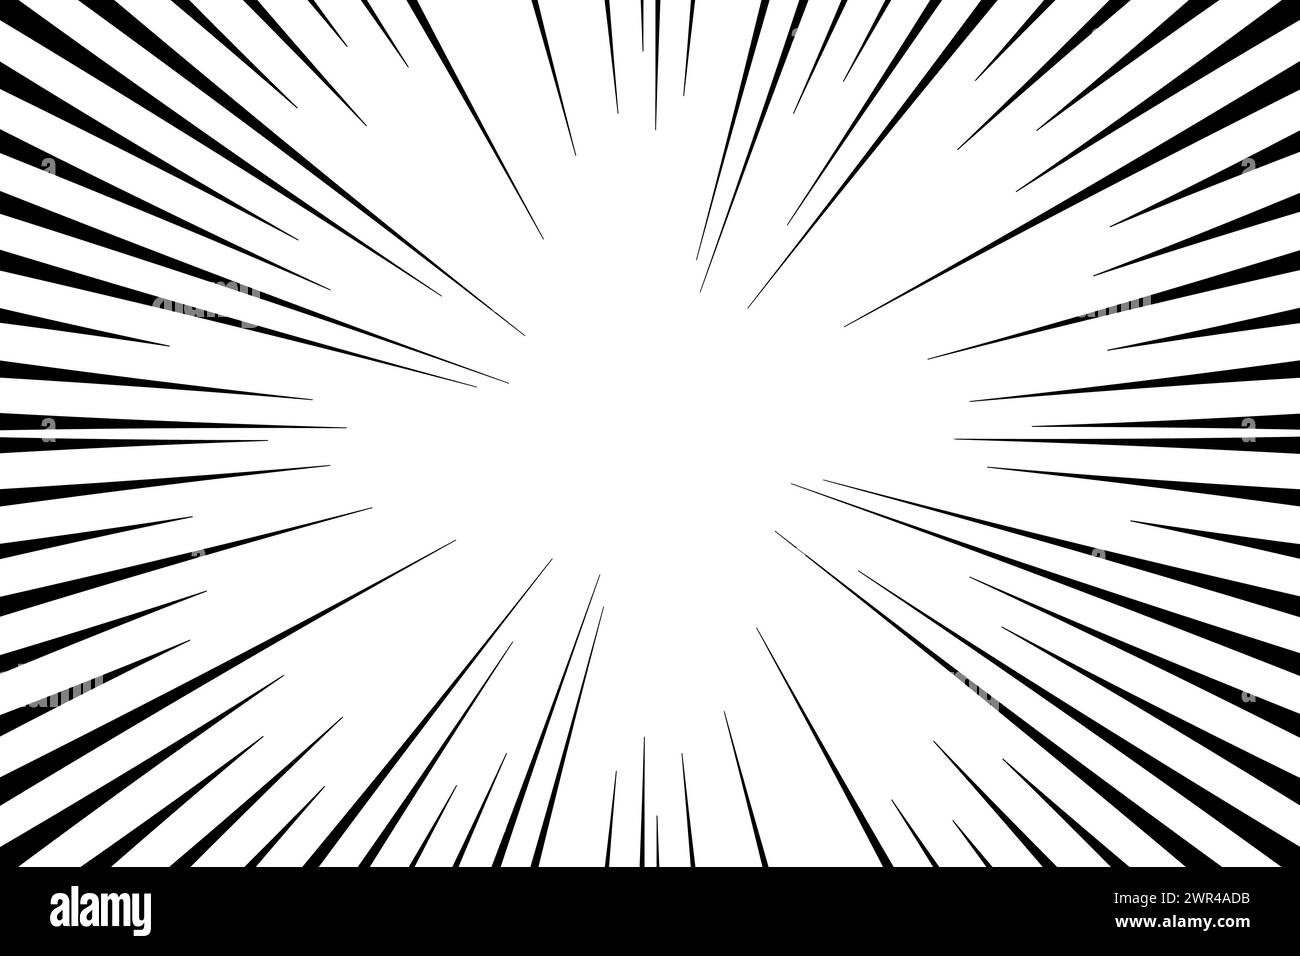 Illustrazione vettoriale delle linee radiali di velocità anime del frame burst di velocità manga. Illustrazione Vettoriale